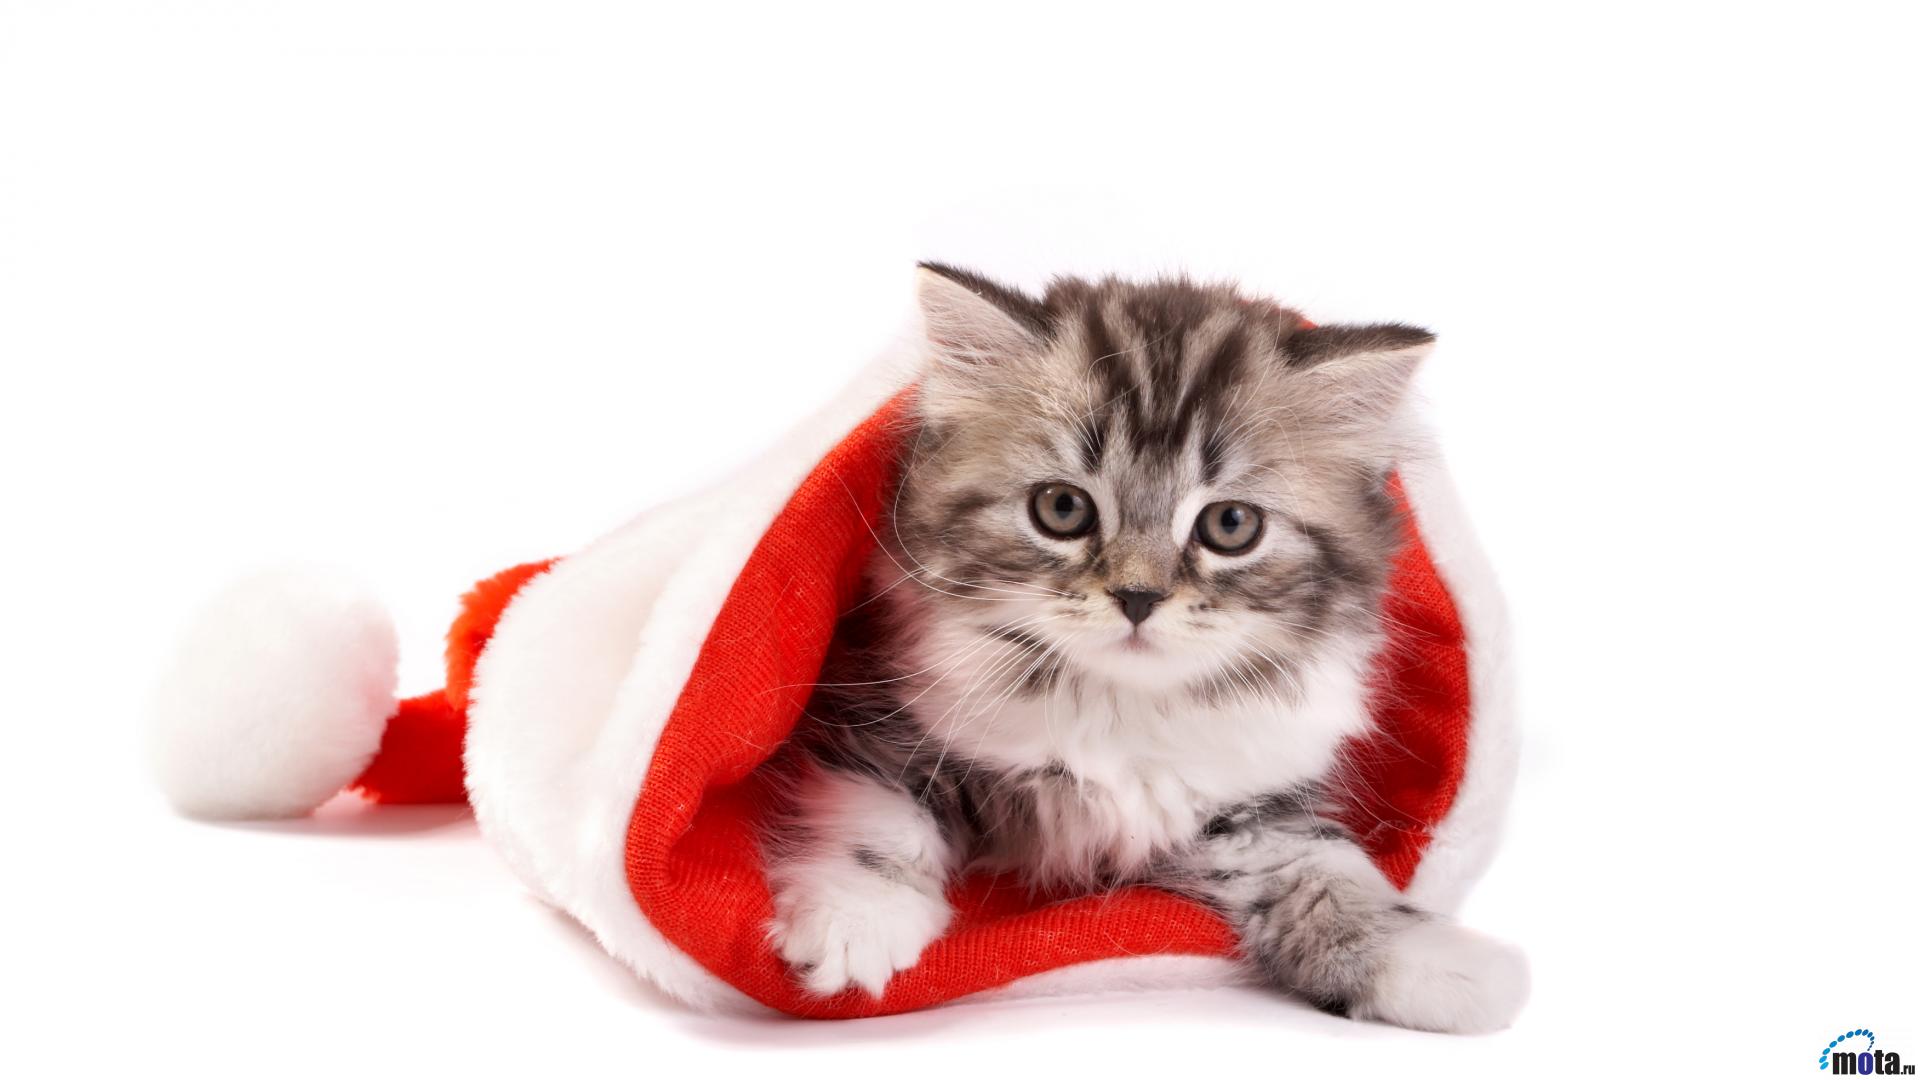 Cute Christmas Cat Wallpaper